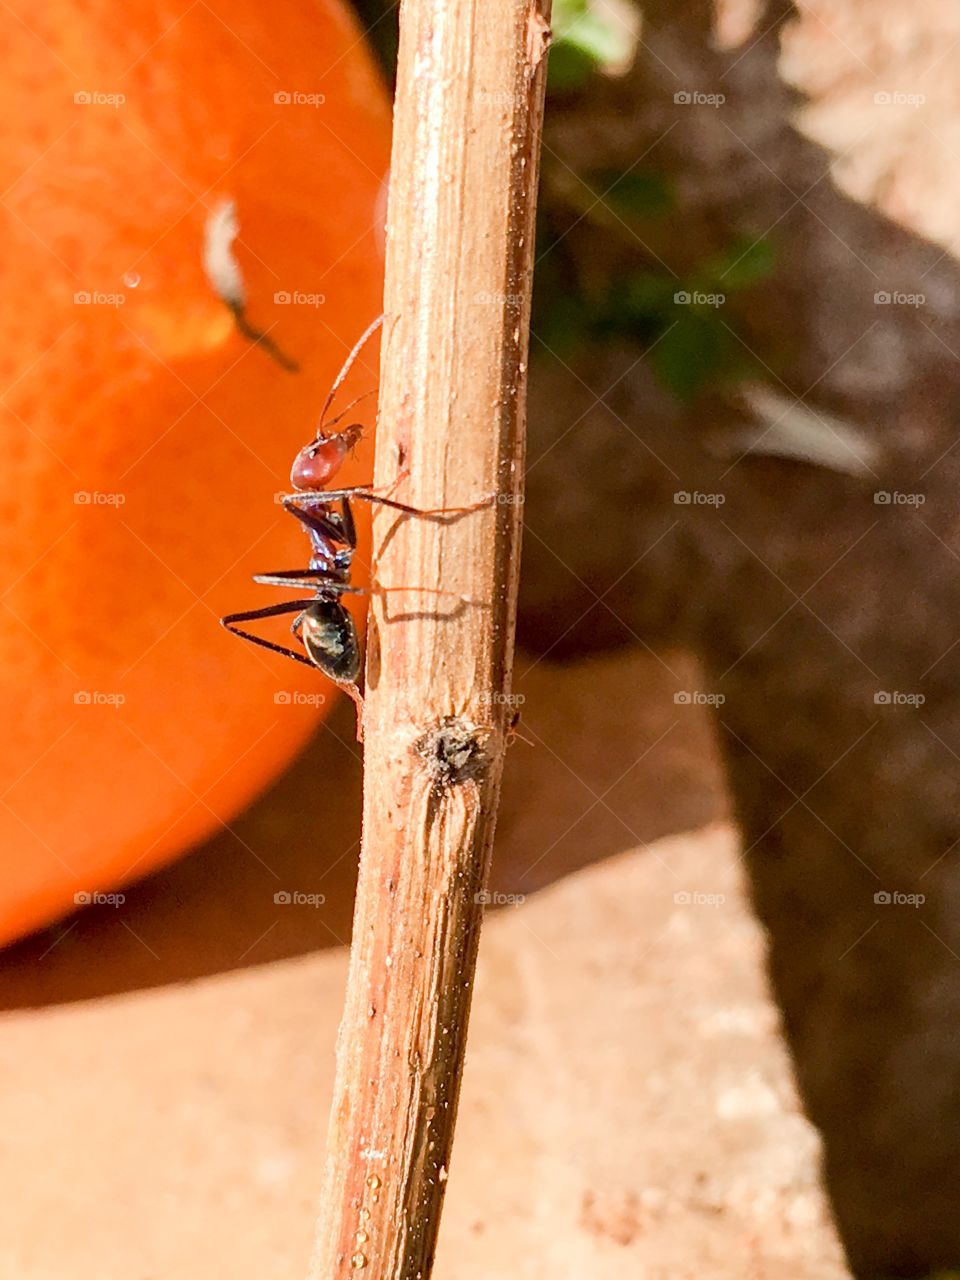 Australian worker ant climbing up a stick closeup view 